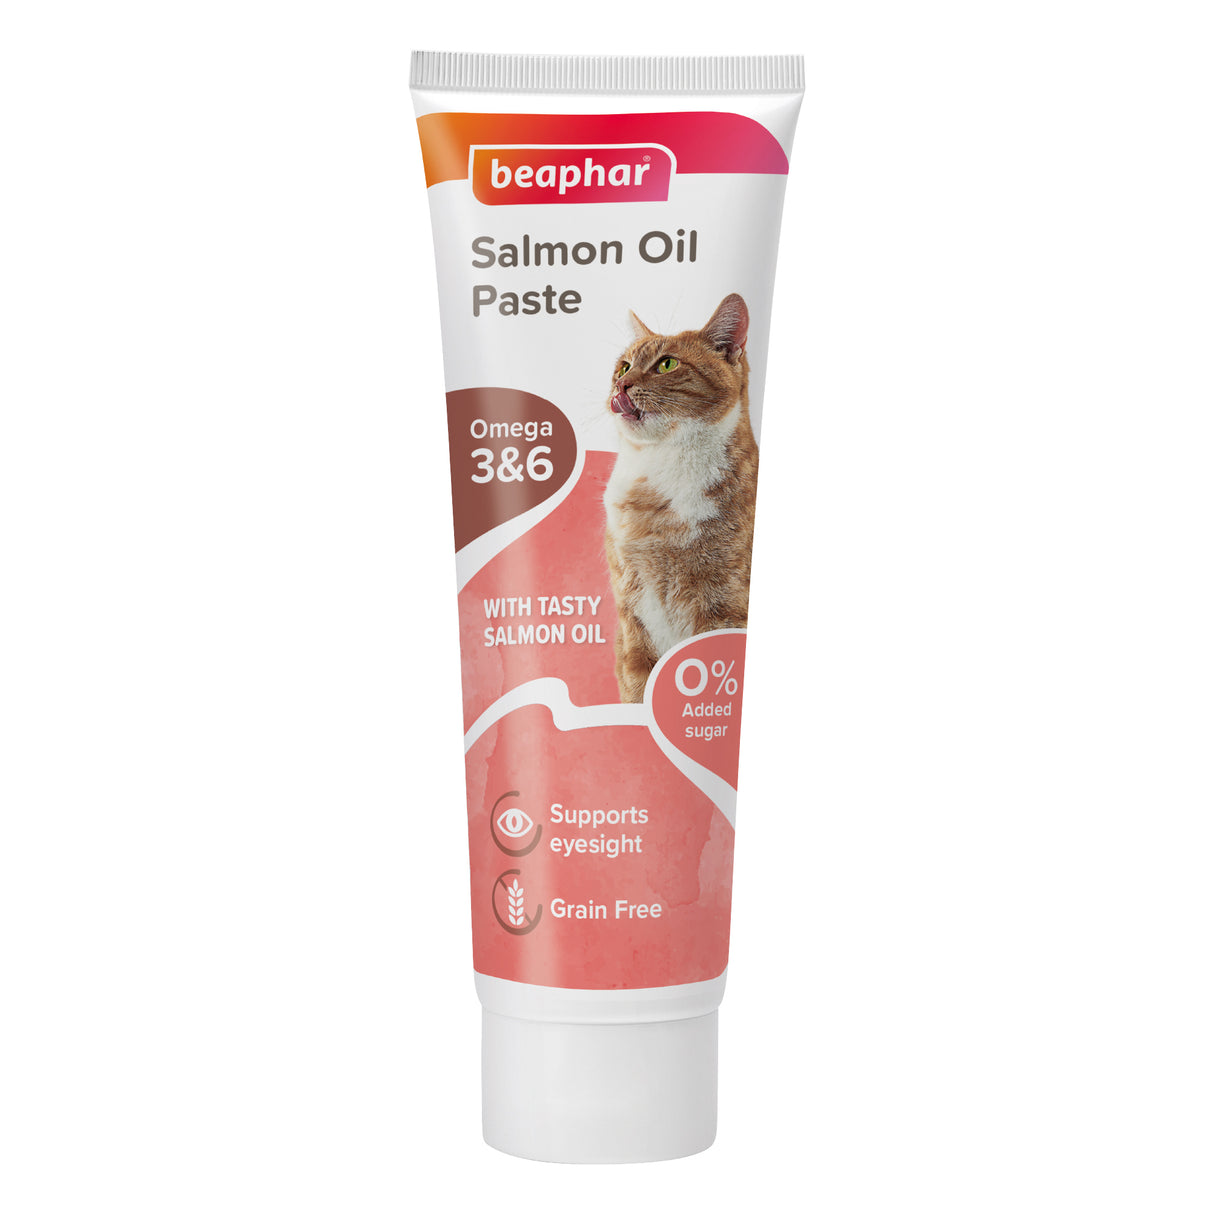 Beaphar Salmon Oil Paste for Cats